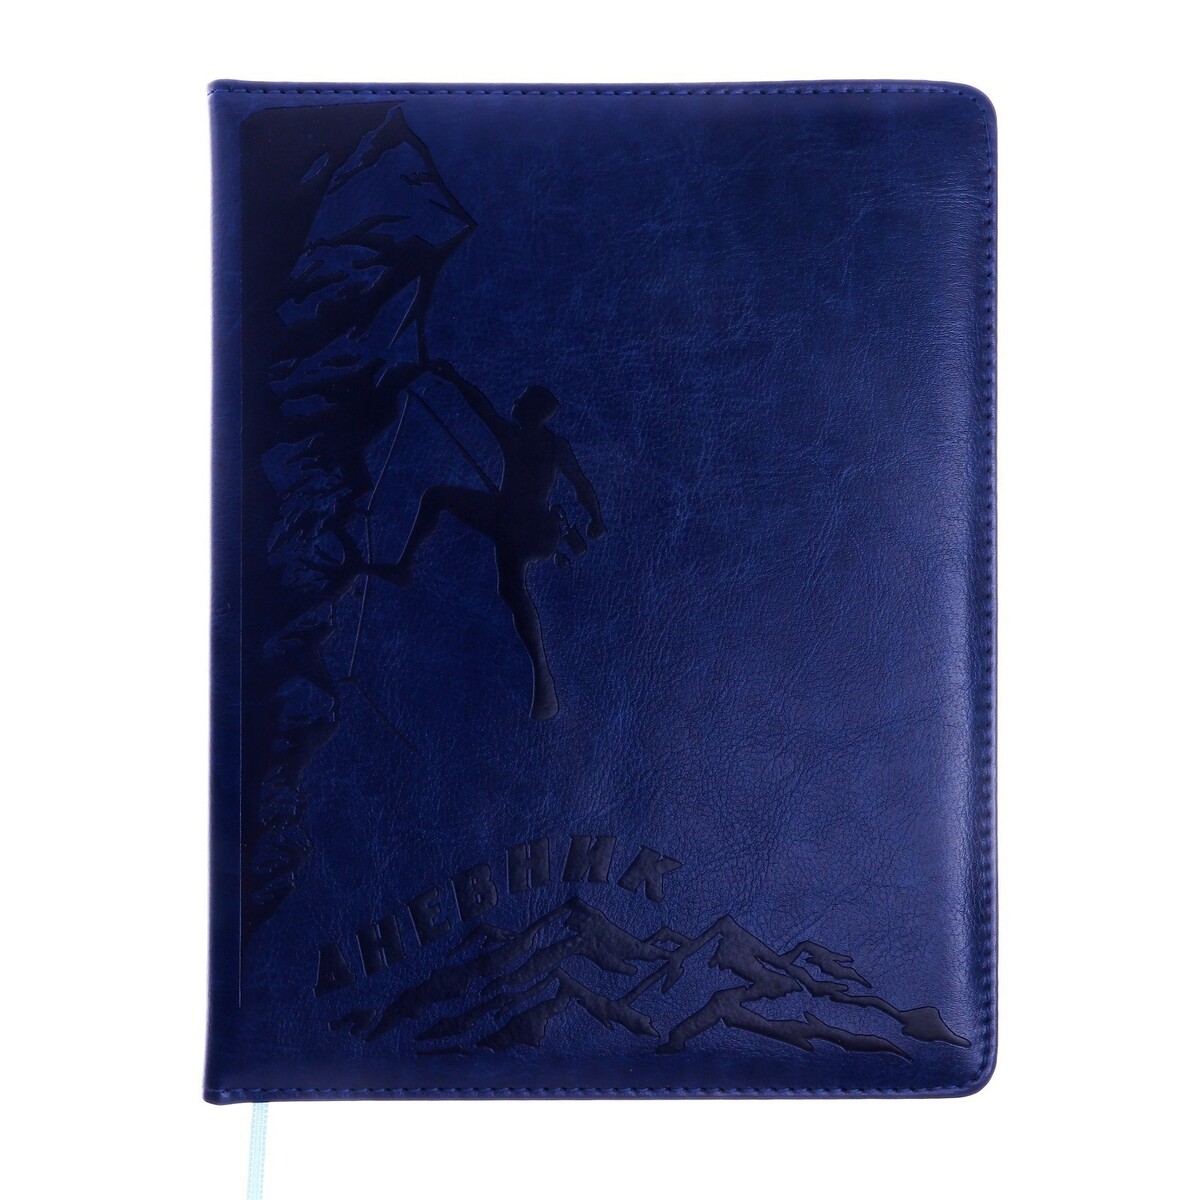 Дневник школьный, 5-11 класс, обложка пвх, скалолаз, синий дневник шк original style синий искусств кожа термотиснение